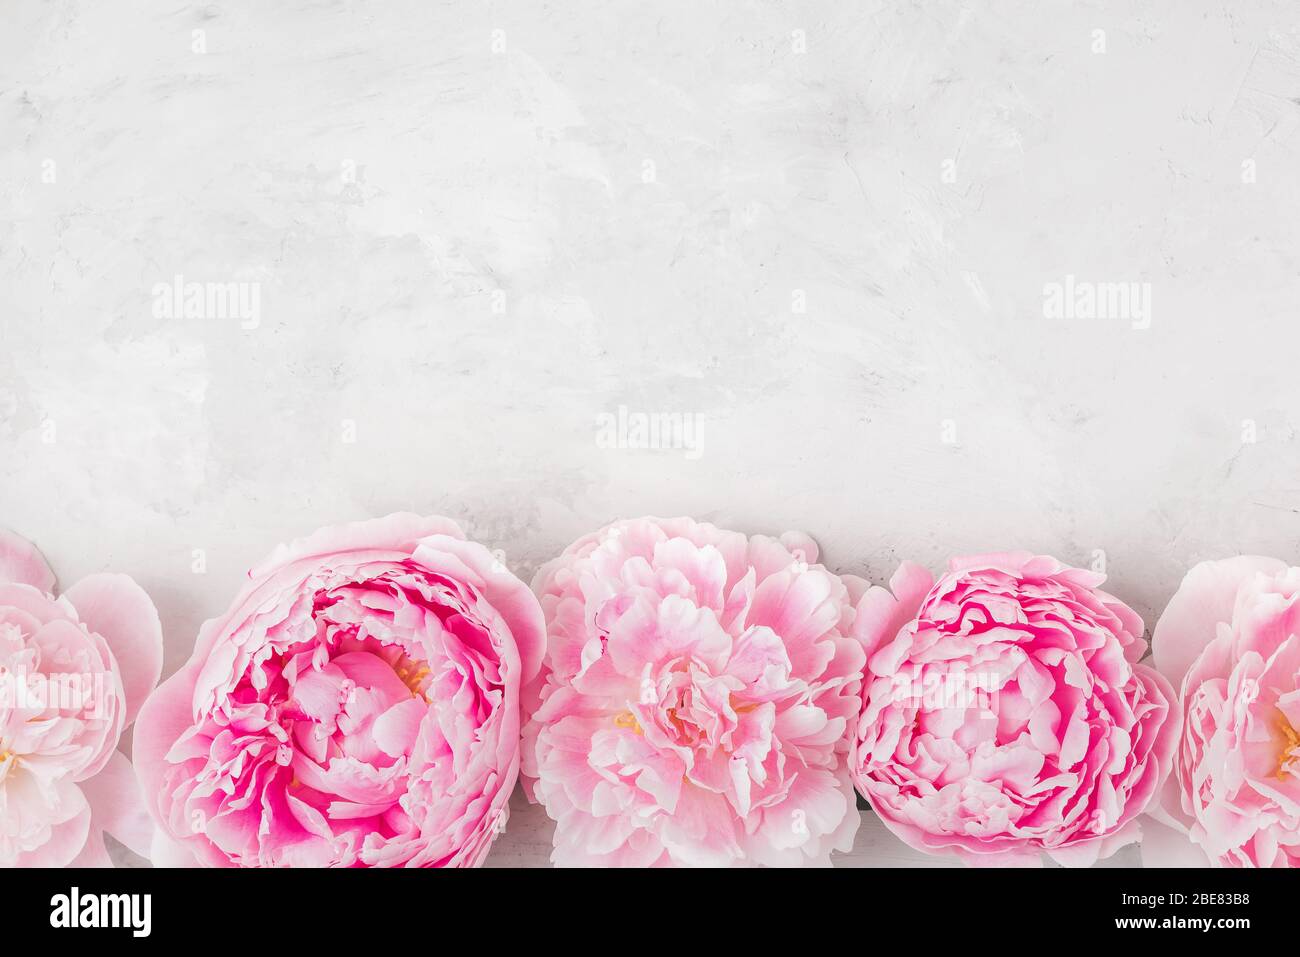 Composición de las flores. Borde hecho de flores de peony rosa sobre fondo blanco. Vista superior plana con espacio de copia Foto de stock